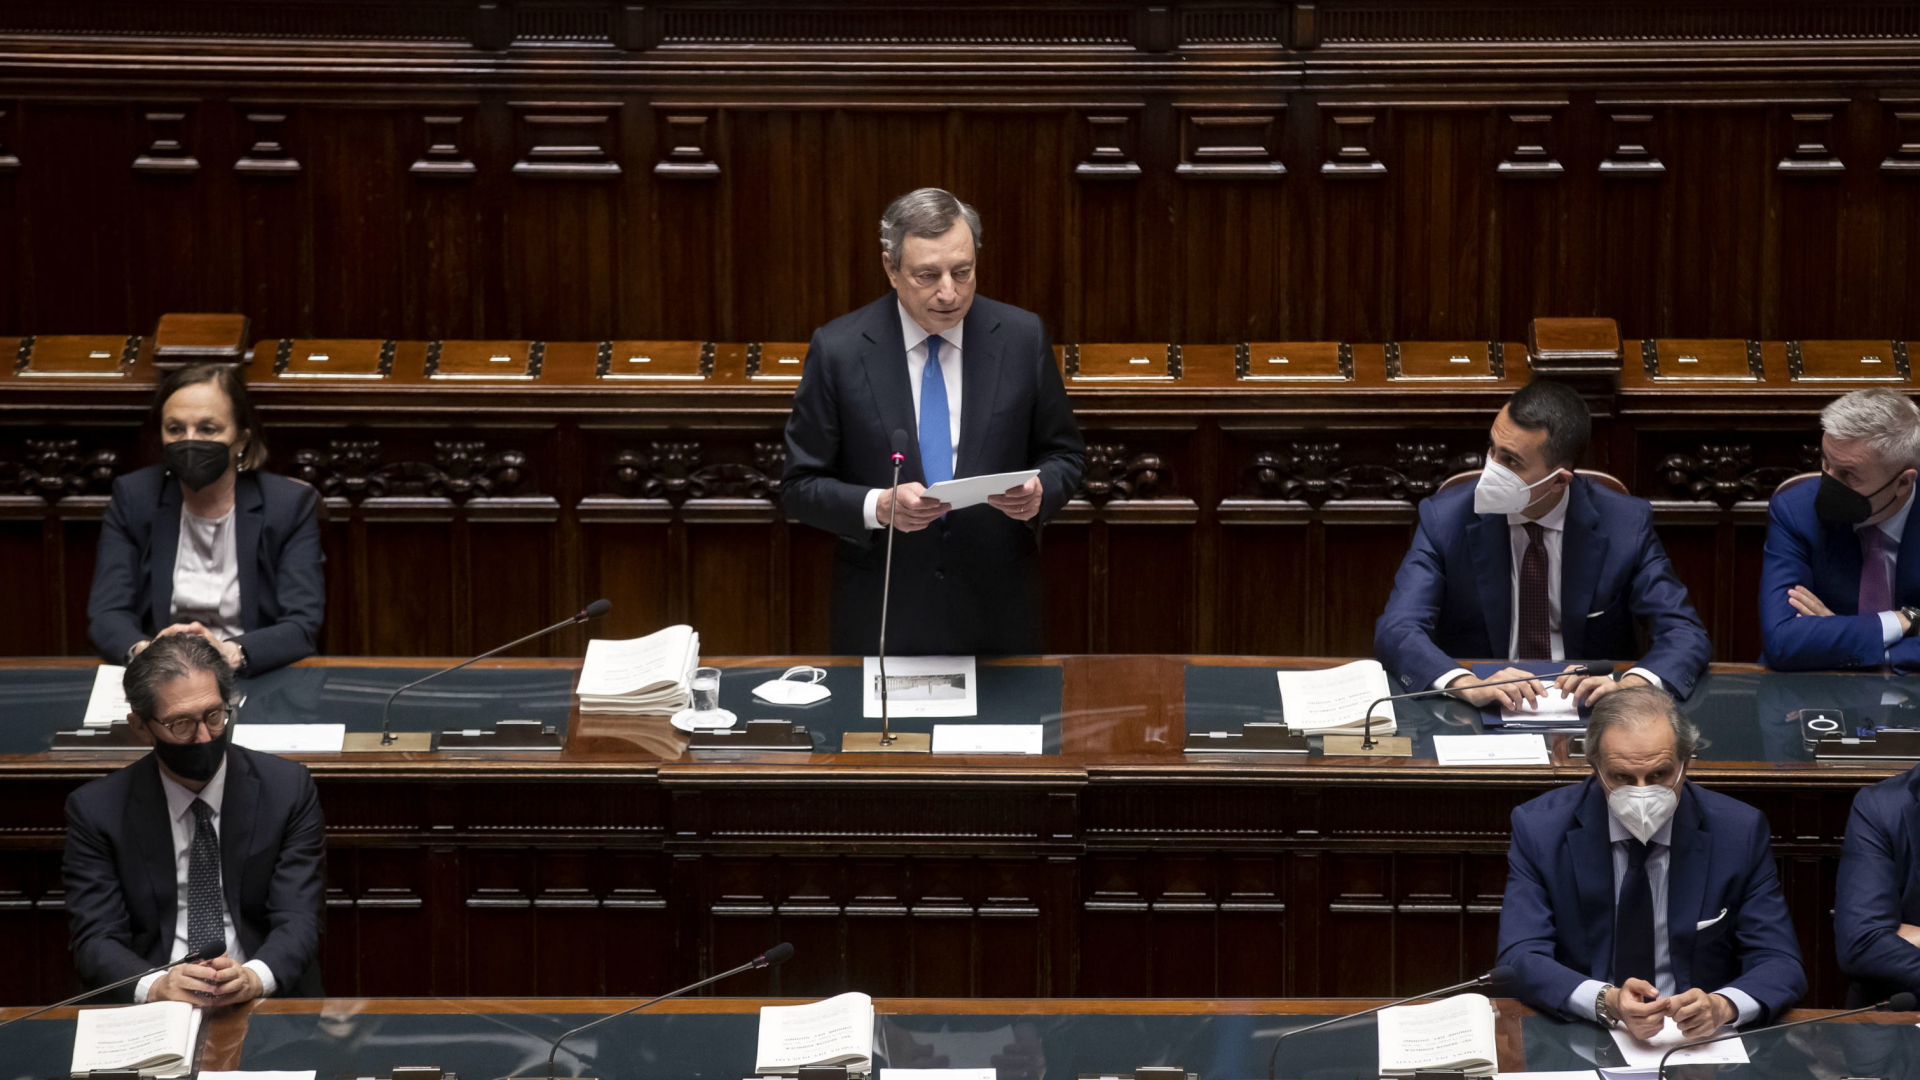 Mario Draghi spricht im italienischen Parlament | EPA